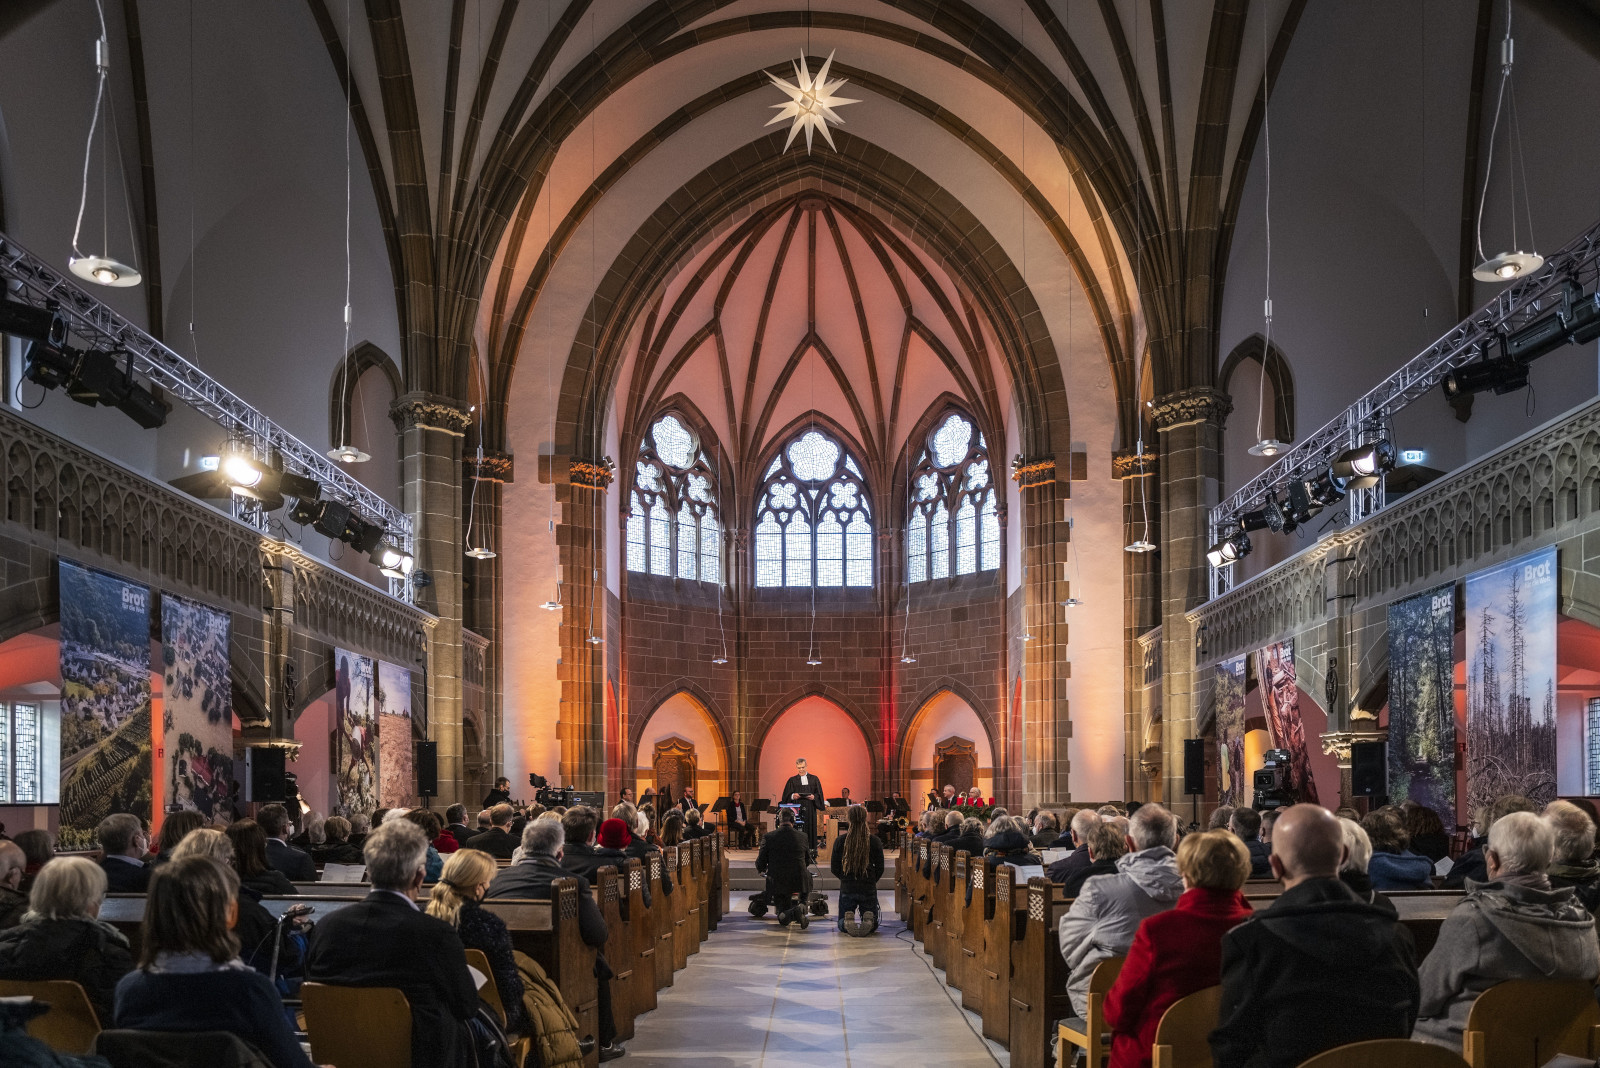 Festgottesdienst zur Eröffnung der 63. Spendenaktion "Brot für die Welt" am 1. Advent  (28.11.2021) in der Christuskirche in Detmold.